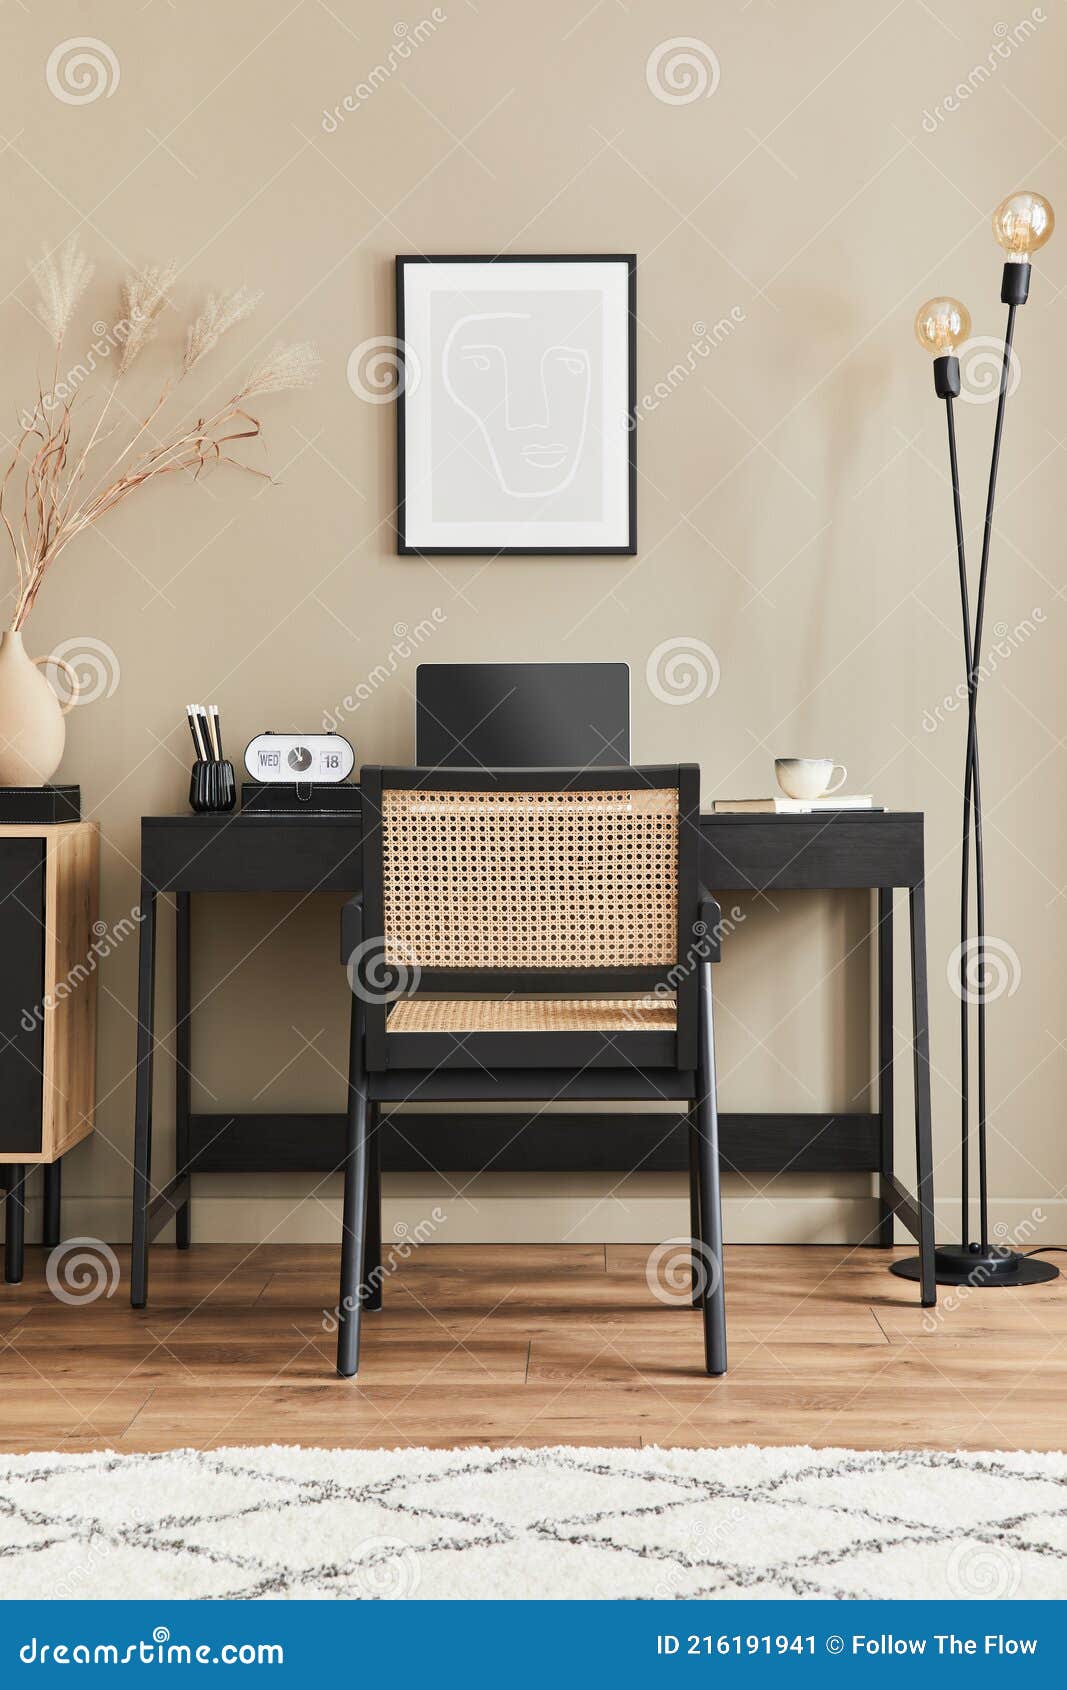 Interieur-Design Von Home Office Raum Mit Stilvollen Stuhl Schreibtisch Kommode Schwarz Mock Up Poster Rahmen Laptop Buch Stockbild Bild von luxus, büro: